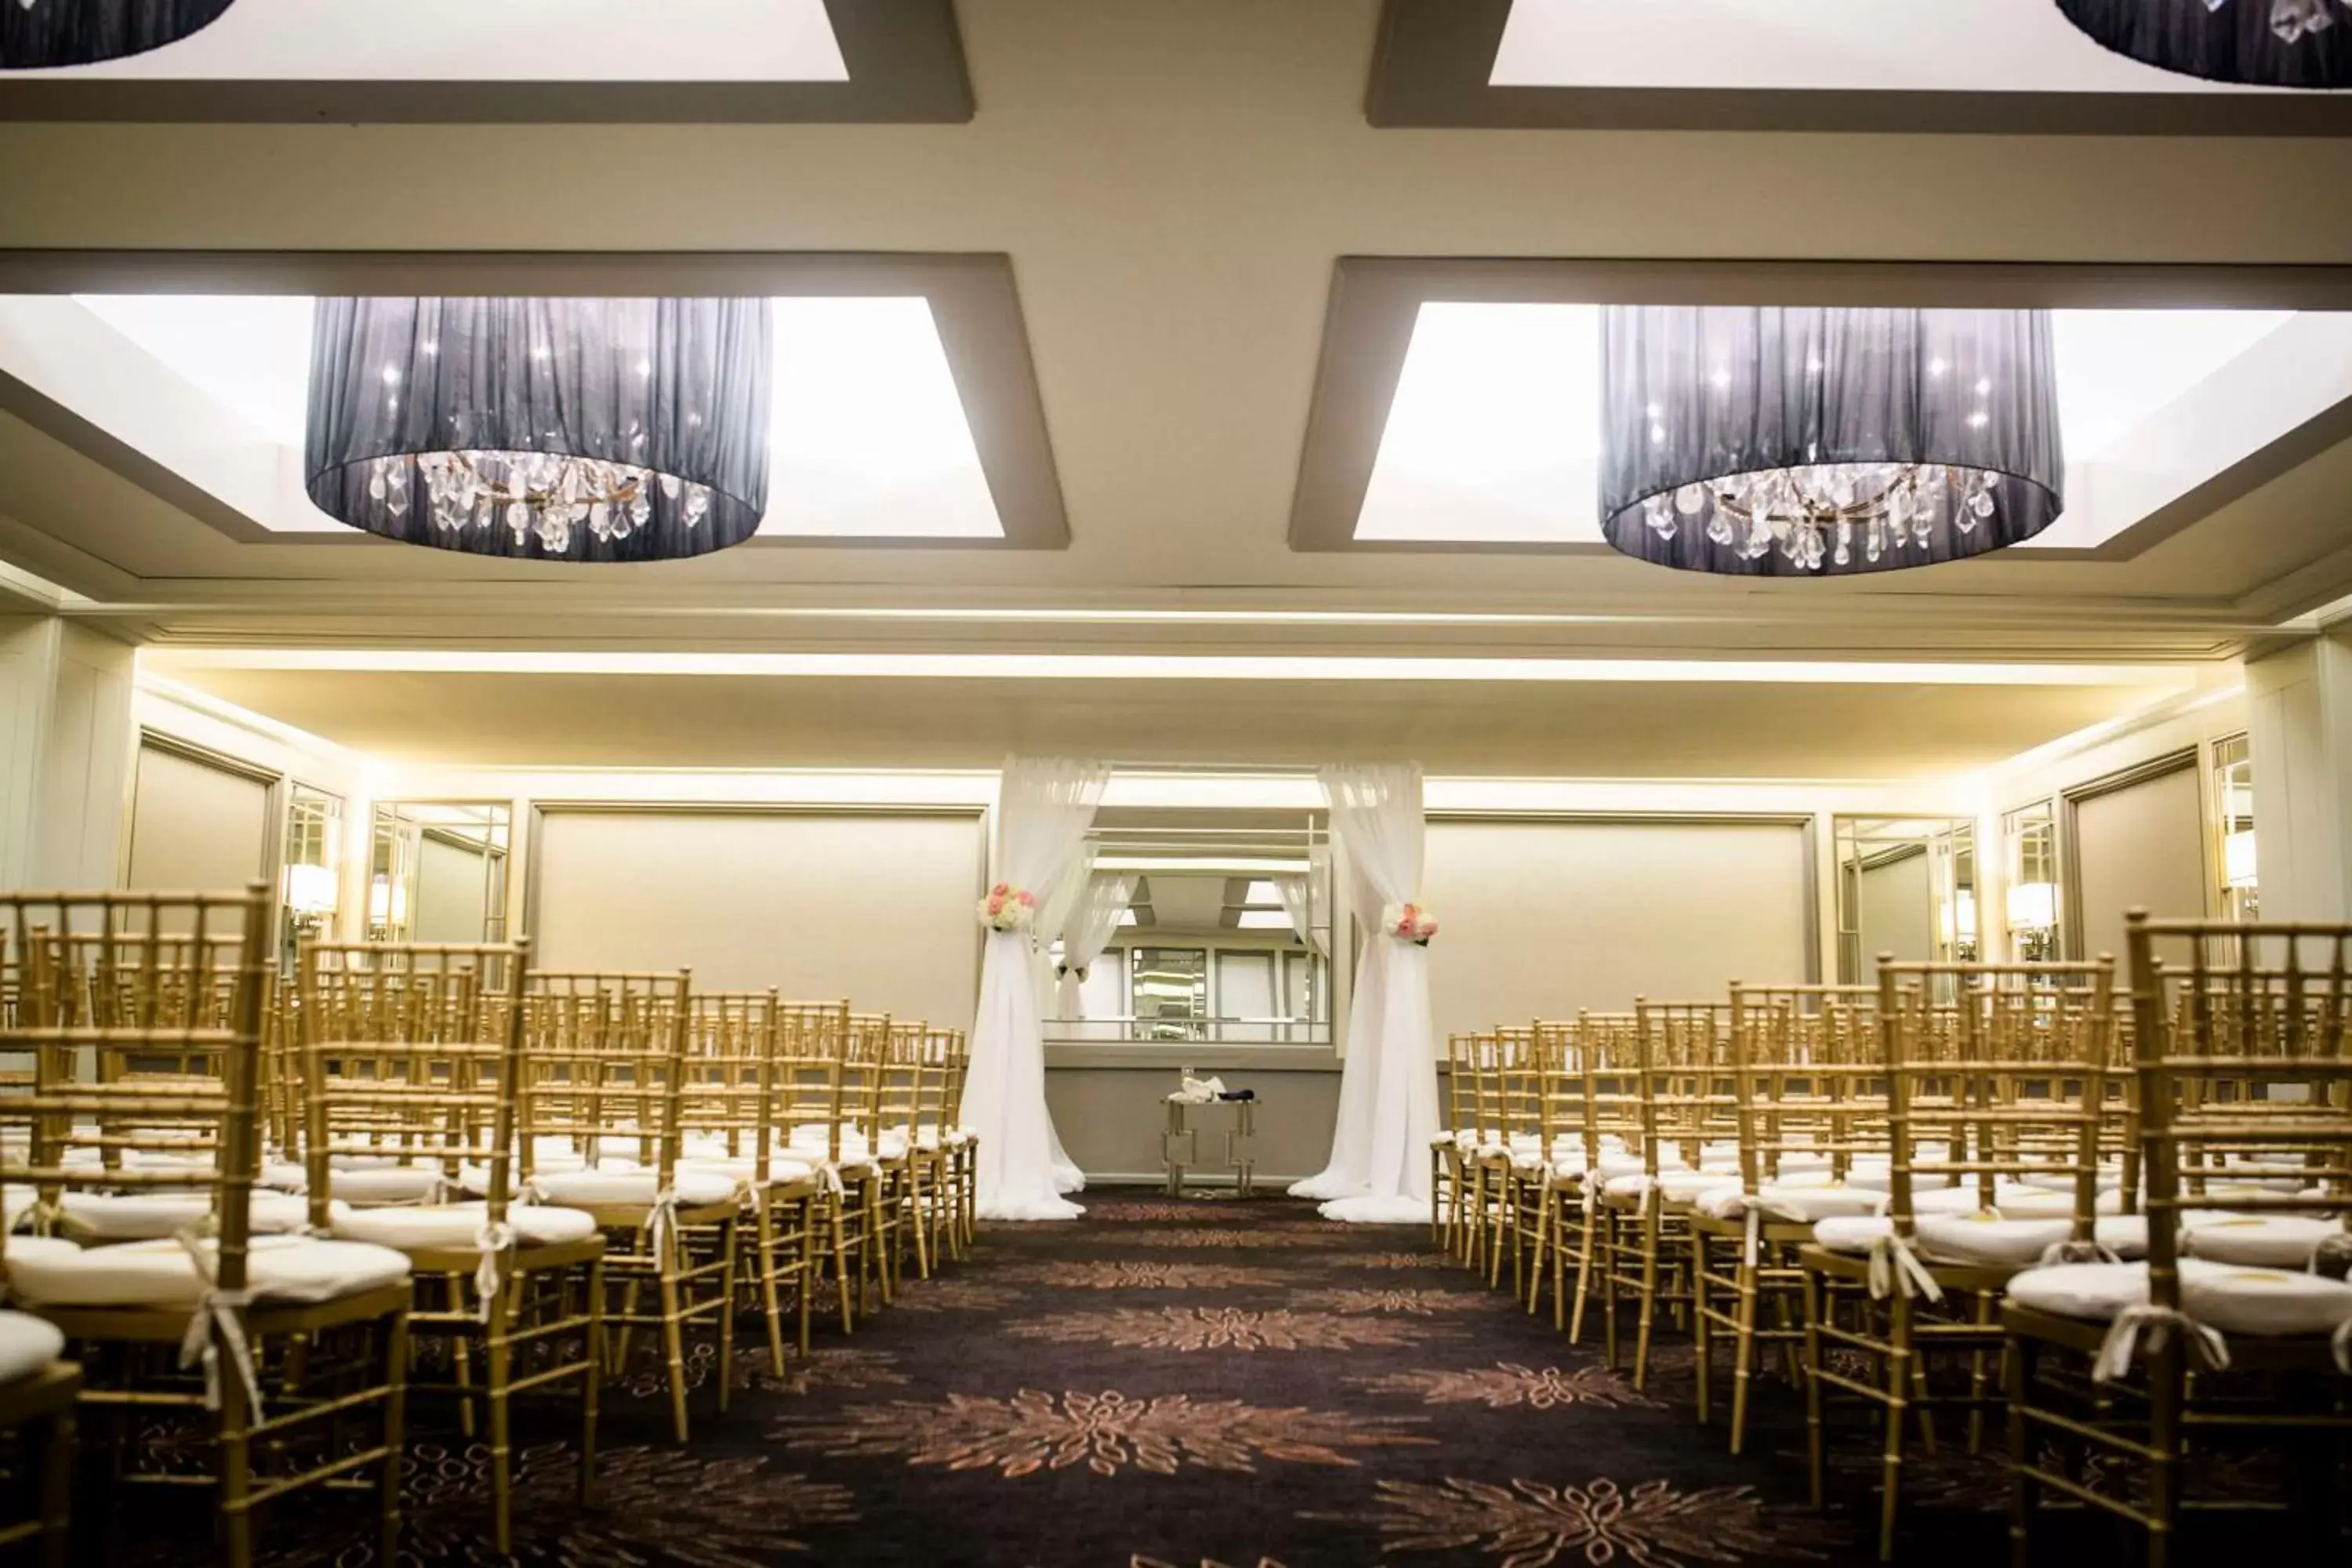 Lobby or reception, Banquet Facilities in Hyatt Regency Boston